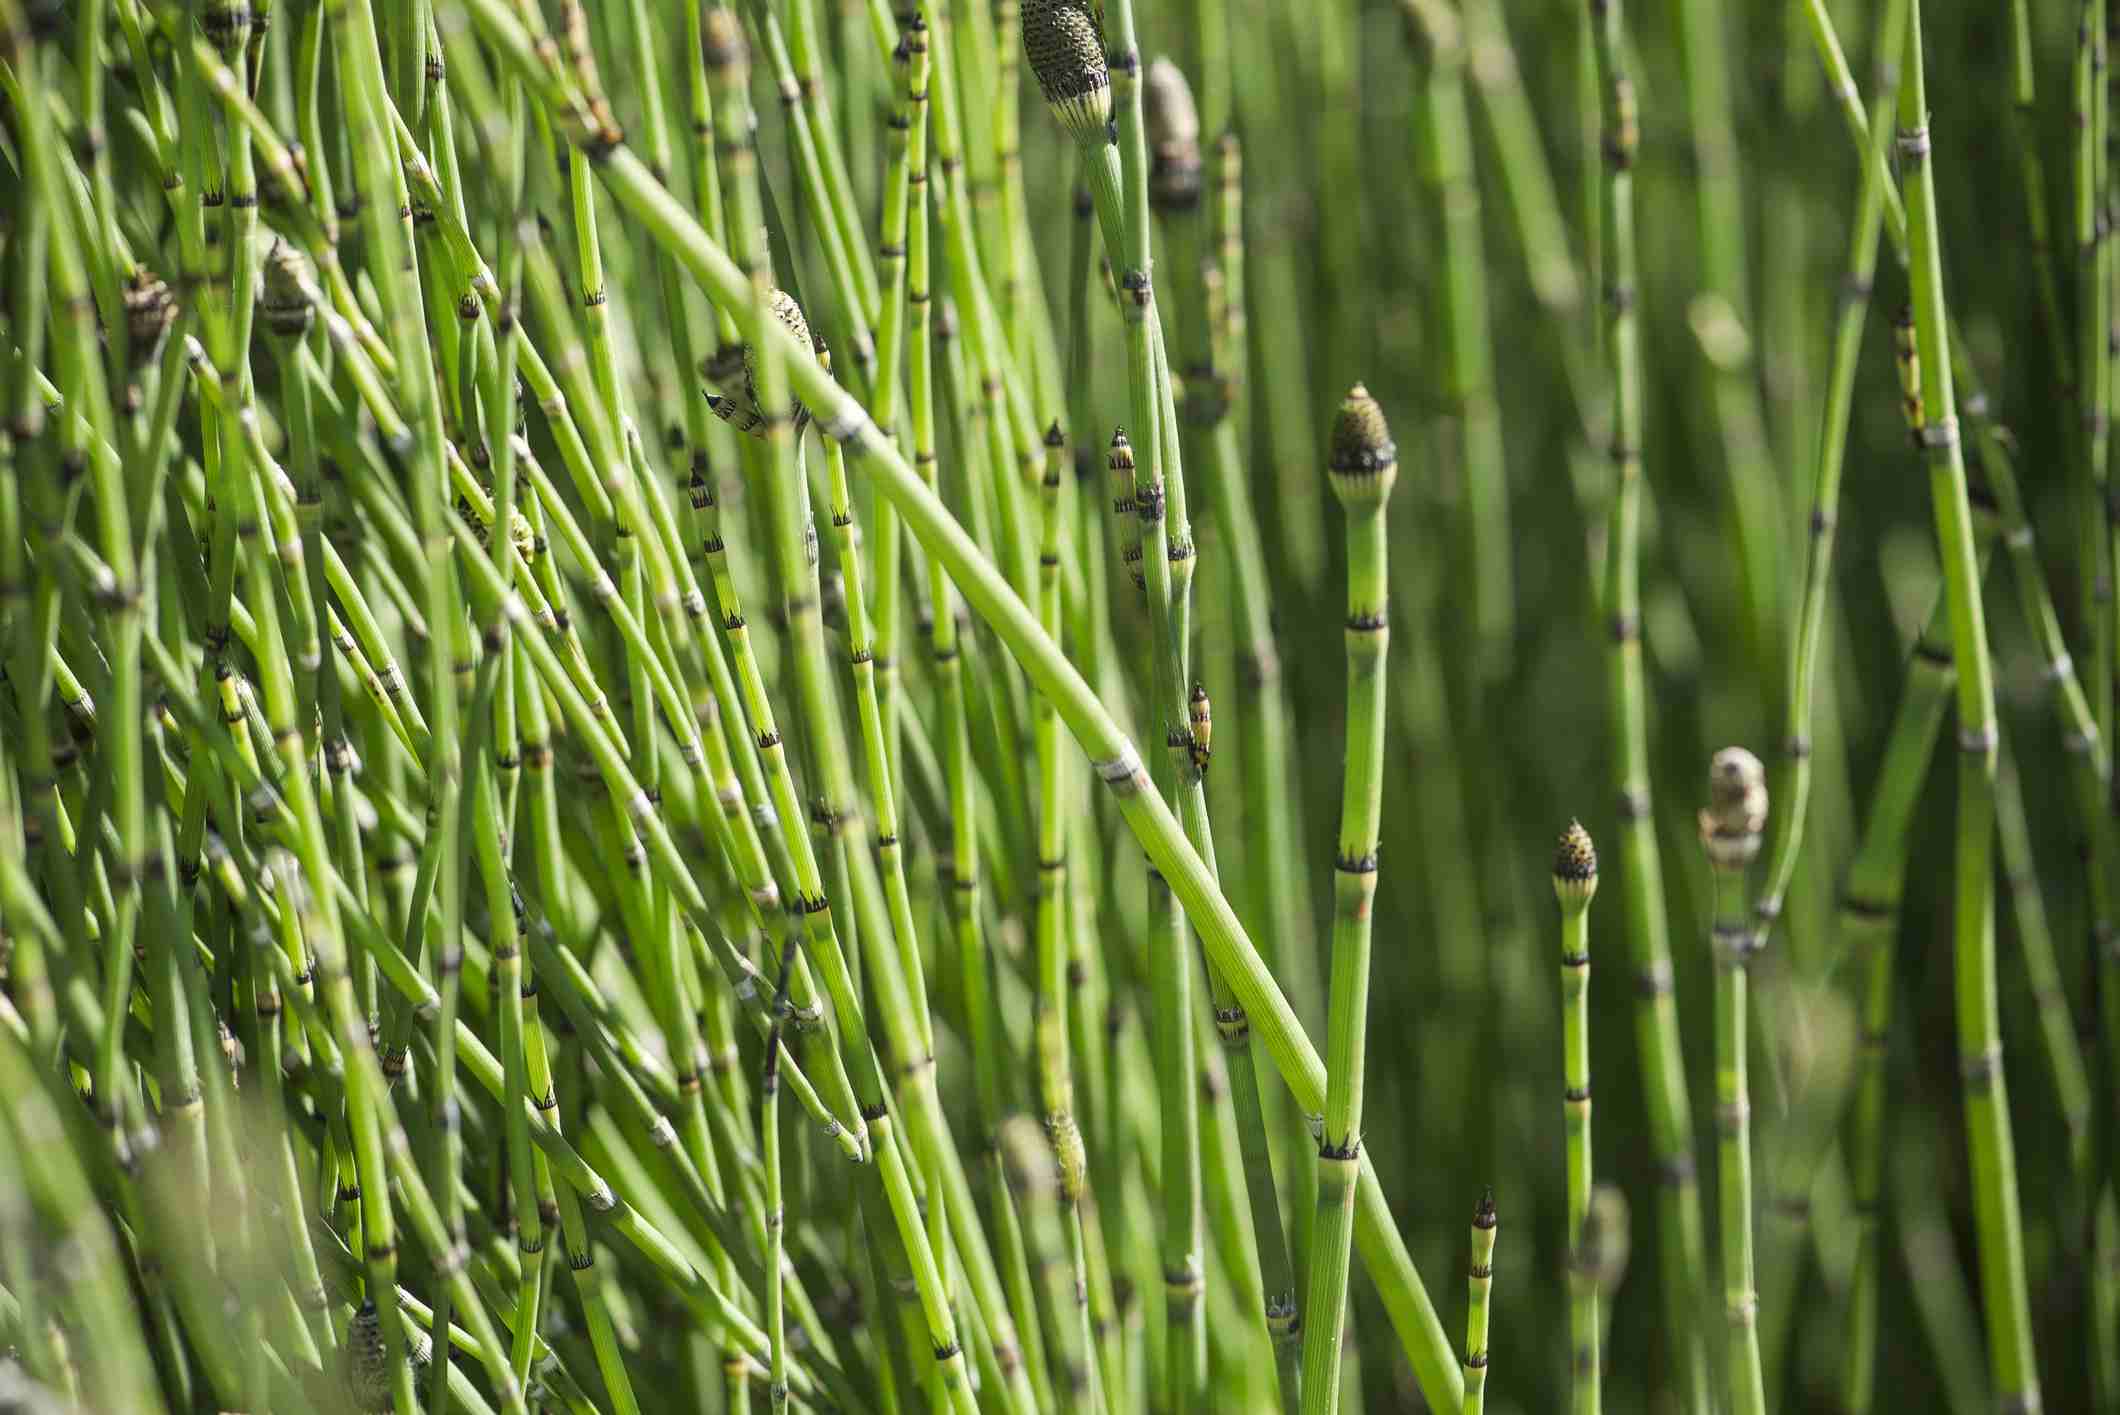 หญ้าถอดปล้อง thai-herbs.thdata.co | หญ้าถอดปล้อง สรรพคุณ สมุนไพร ไทย 